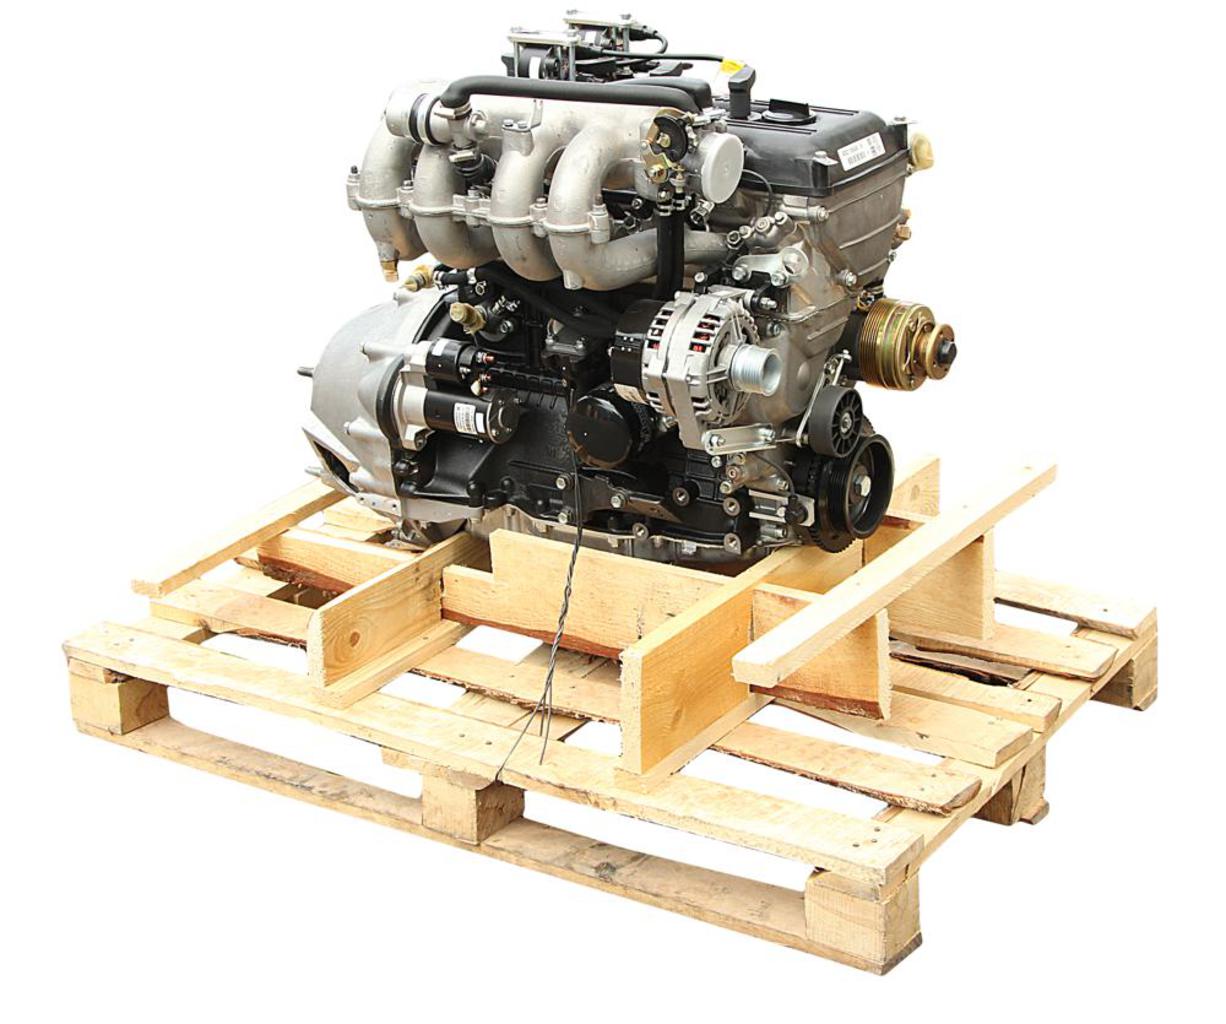 Двигатель ЗМЗ-40522 ГАЗ-3302,2217 ЕВРО-2 152 л.с. (под МИКАС 7.1) №, 040522-1000400-10, ЗМЗ